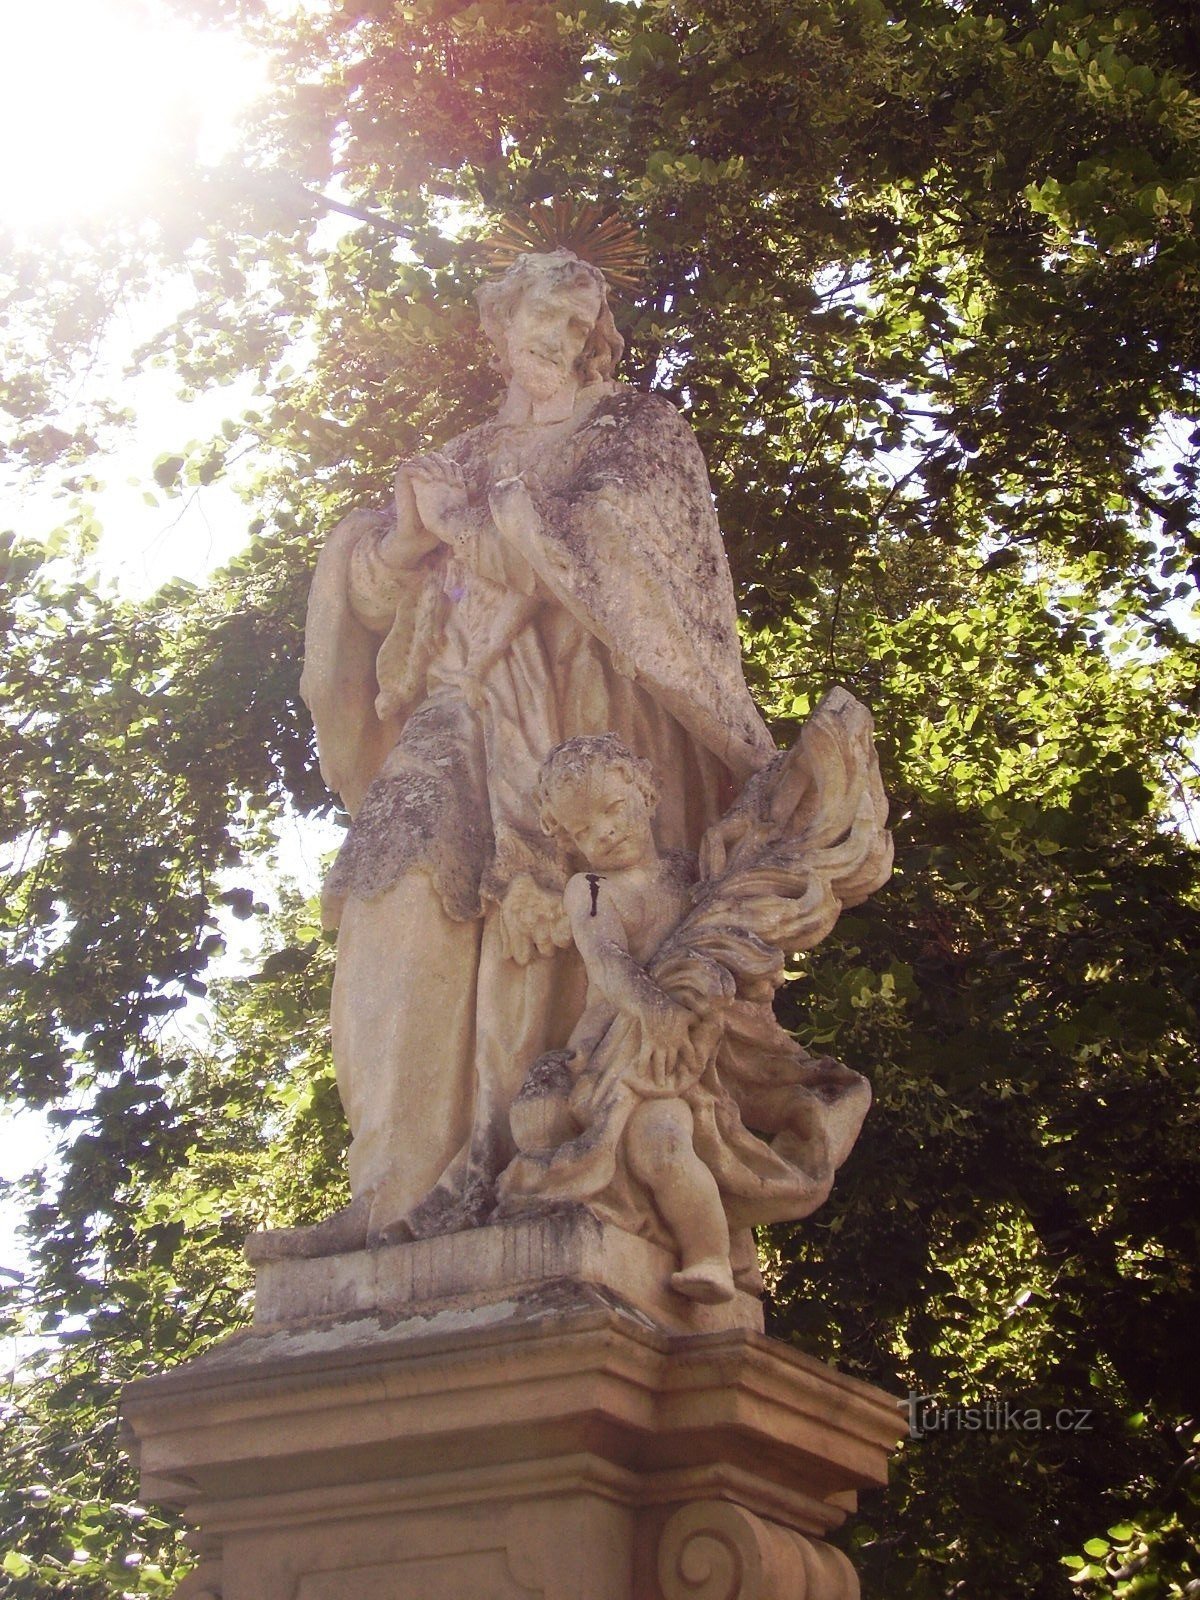 Τα αγάλματα του Αγίου Ιωάννη στο Dolní Kounice